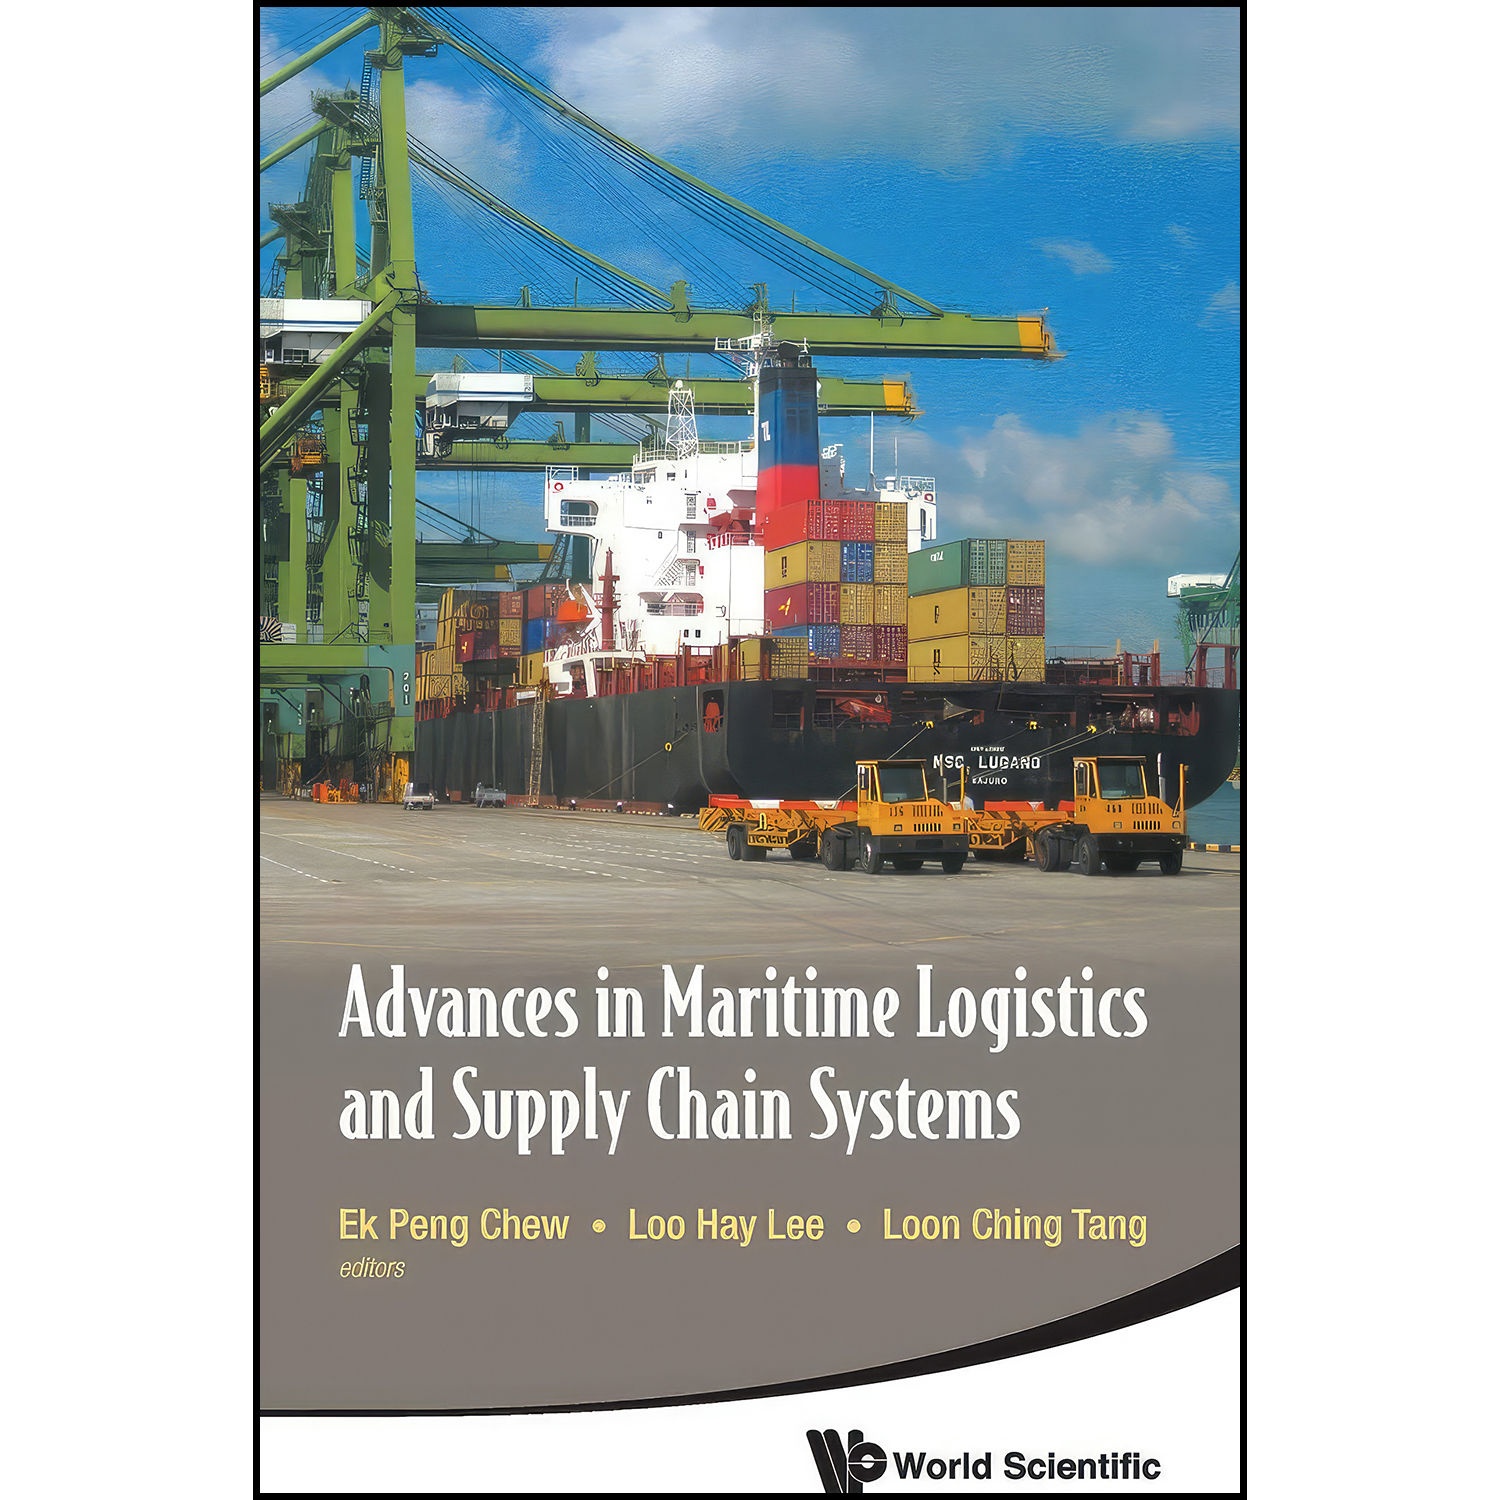 کتاب Advances in Maritime Logistics and Supply Chain Systems اثر جمعي از نويسندگان انتشارات World Scientific Publishing Company